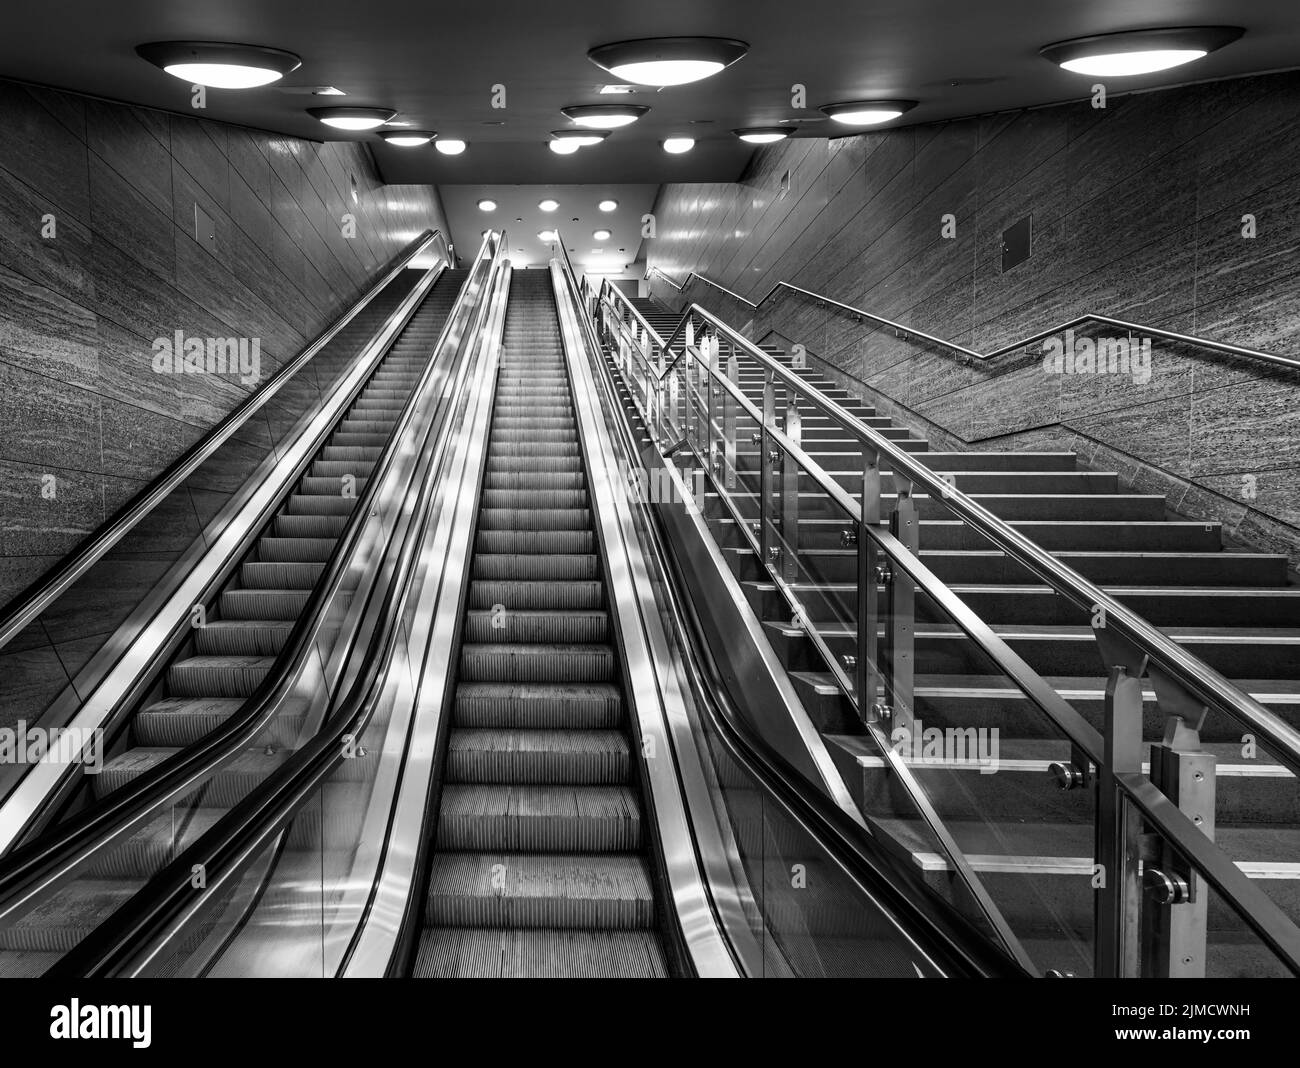 Noir et blanc, escalier roulant à la station de métro Unter den Linden, Berlin, Allemagne Banque D'Images